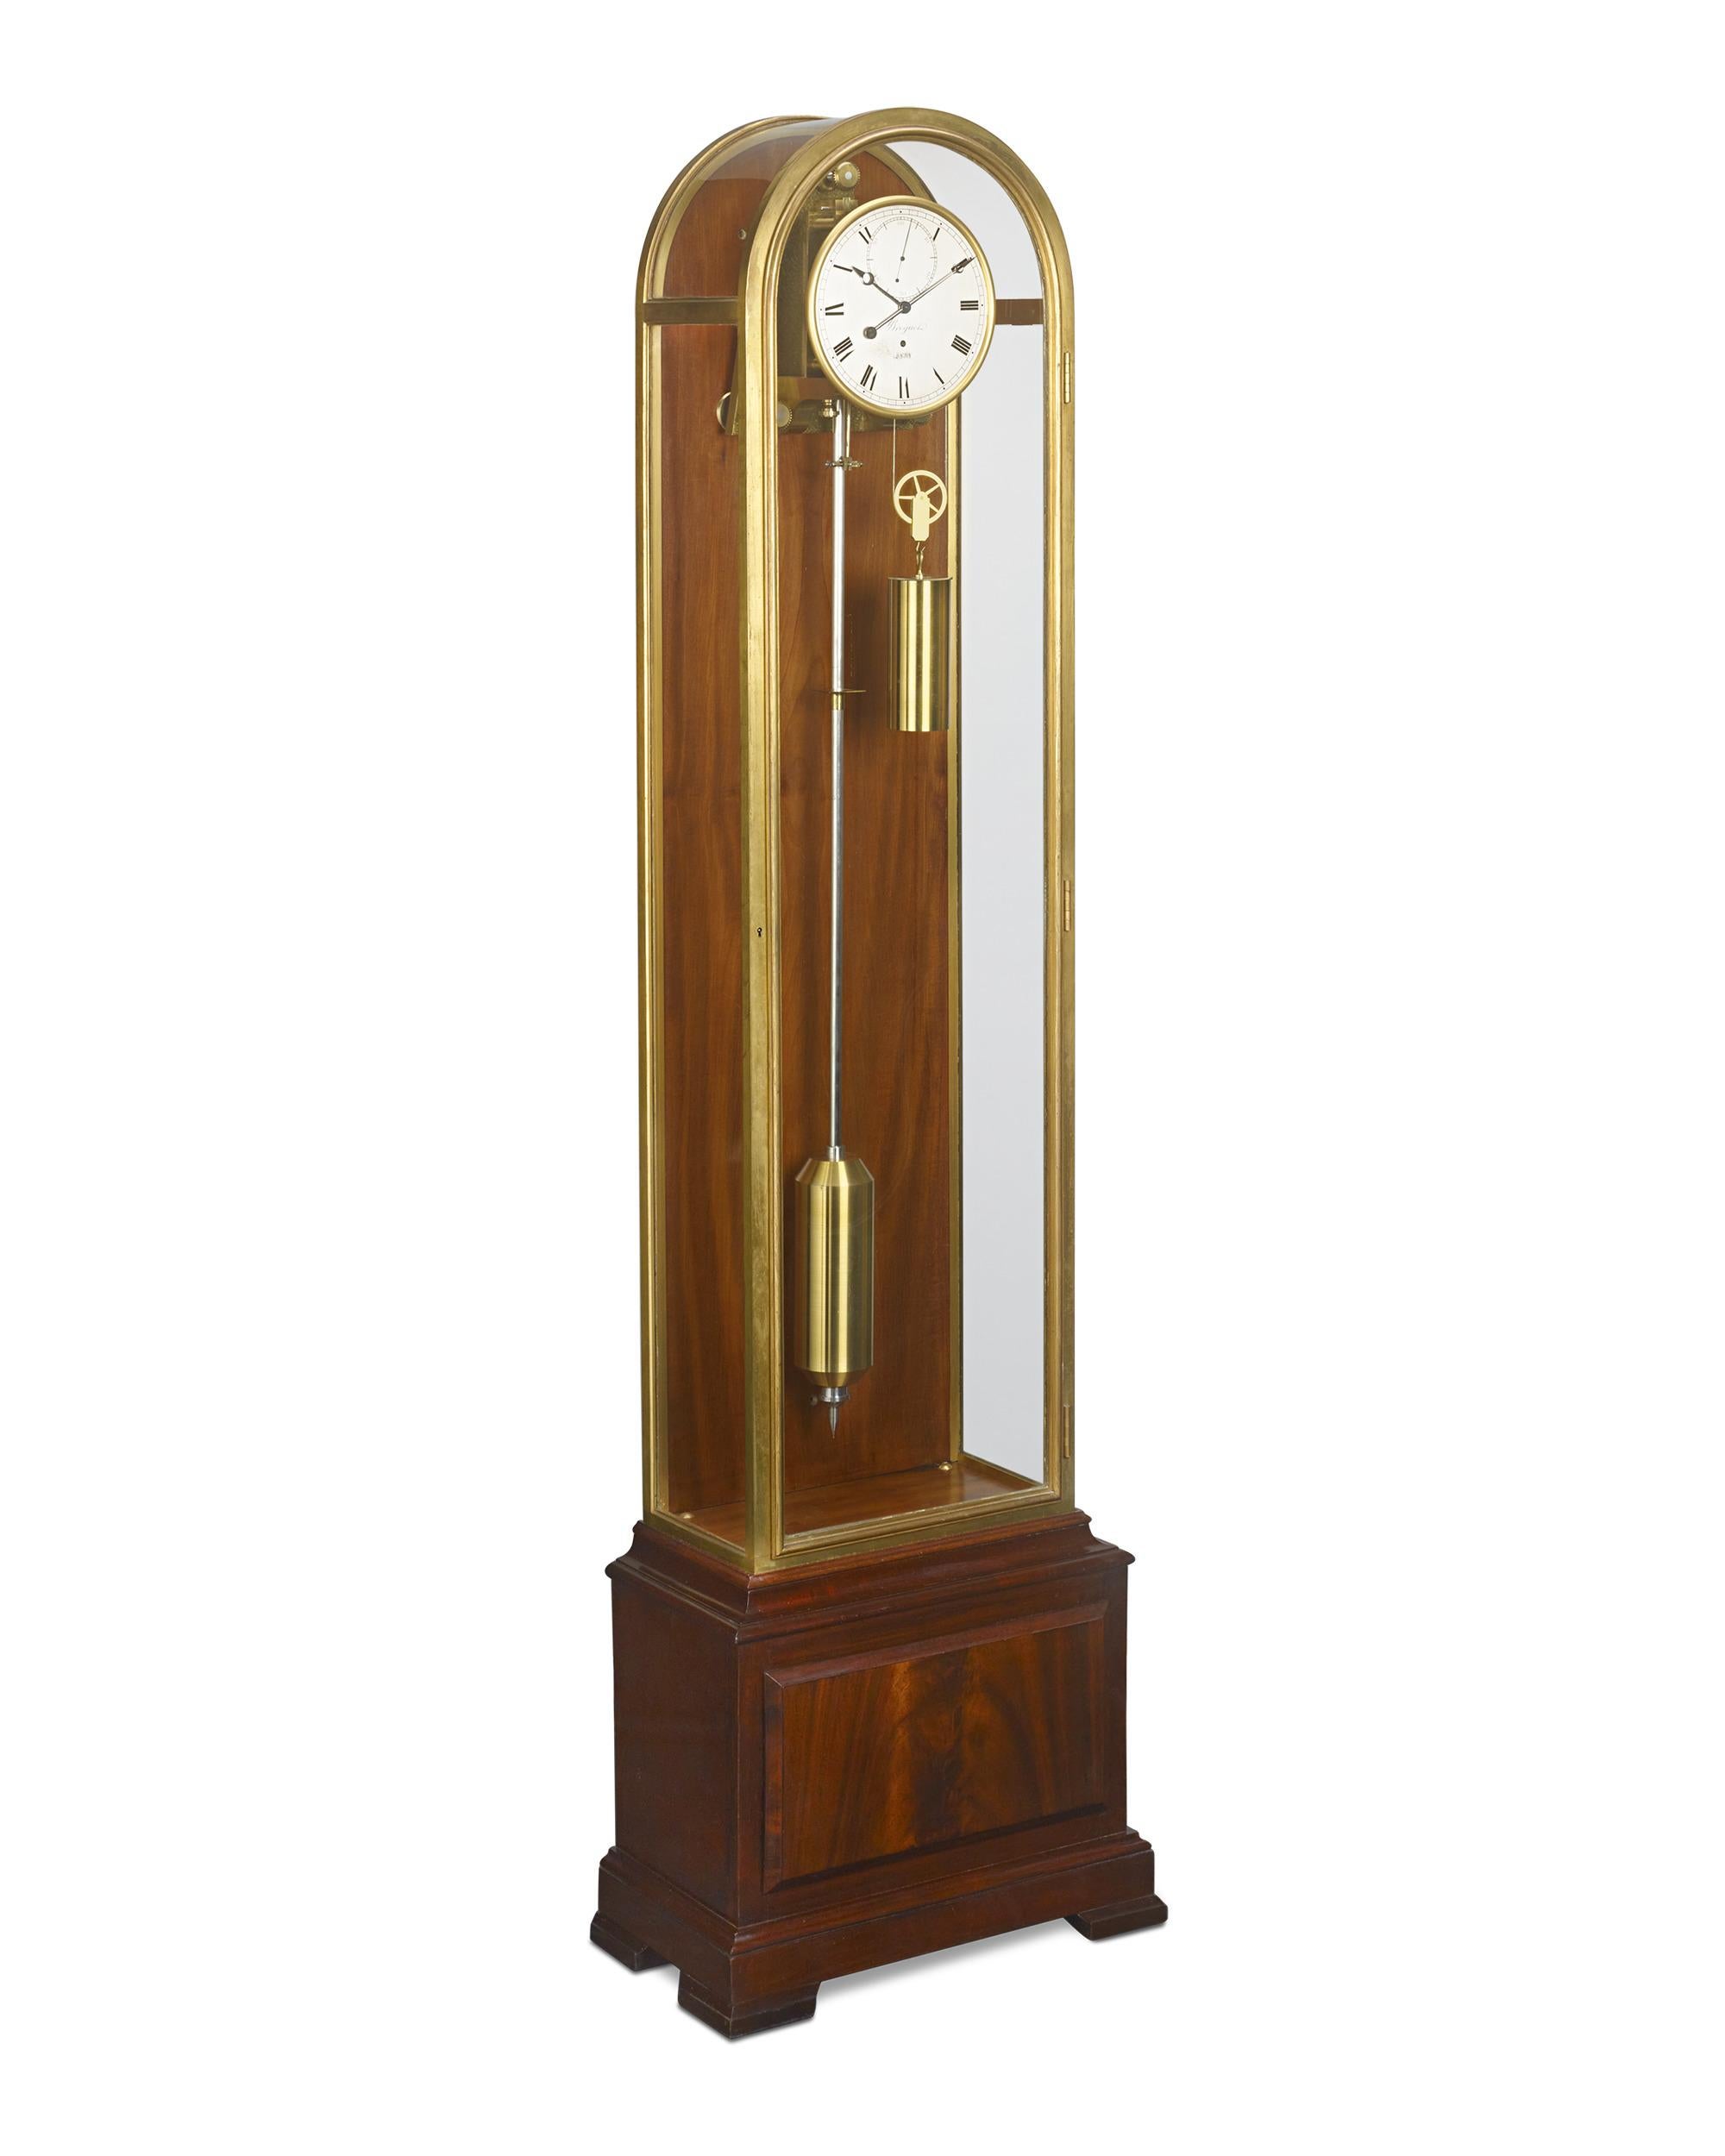 Diese am 31. Dezember 1931 fertiggestellte Breguet-Regulatorenuhr aus Mahagoni und Messing ist ein perfektes Beispiel für Breguets Art déco und mechanische Exzellenz in der wichtigen Zwischenkriegszeit. Die Uhr ist mit den typischen